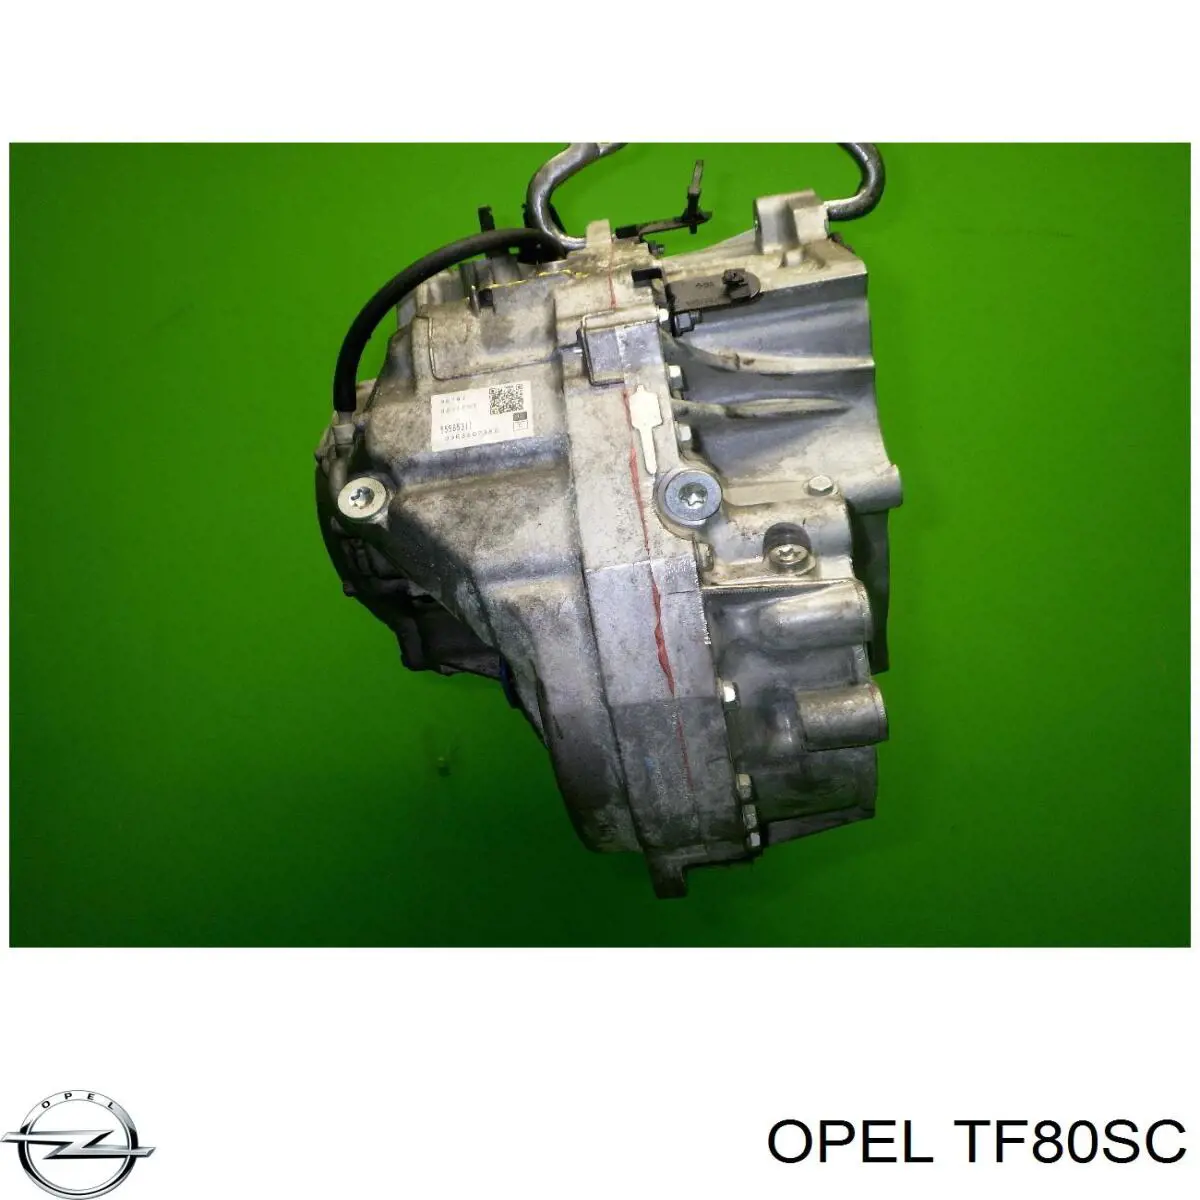 Transmisión automática completa para Opel Vectra 